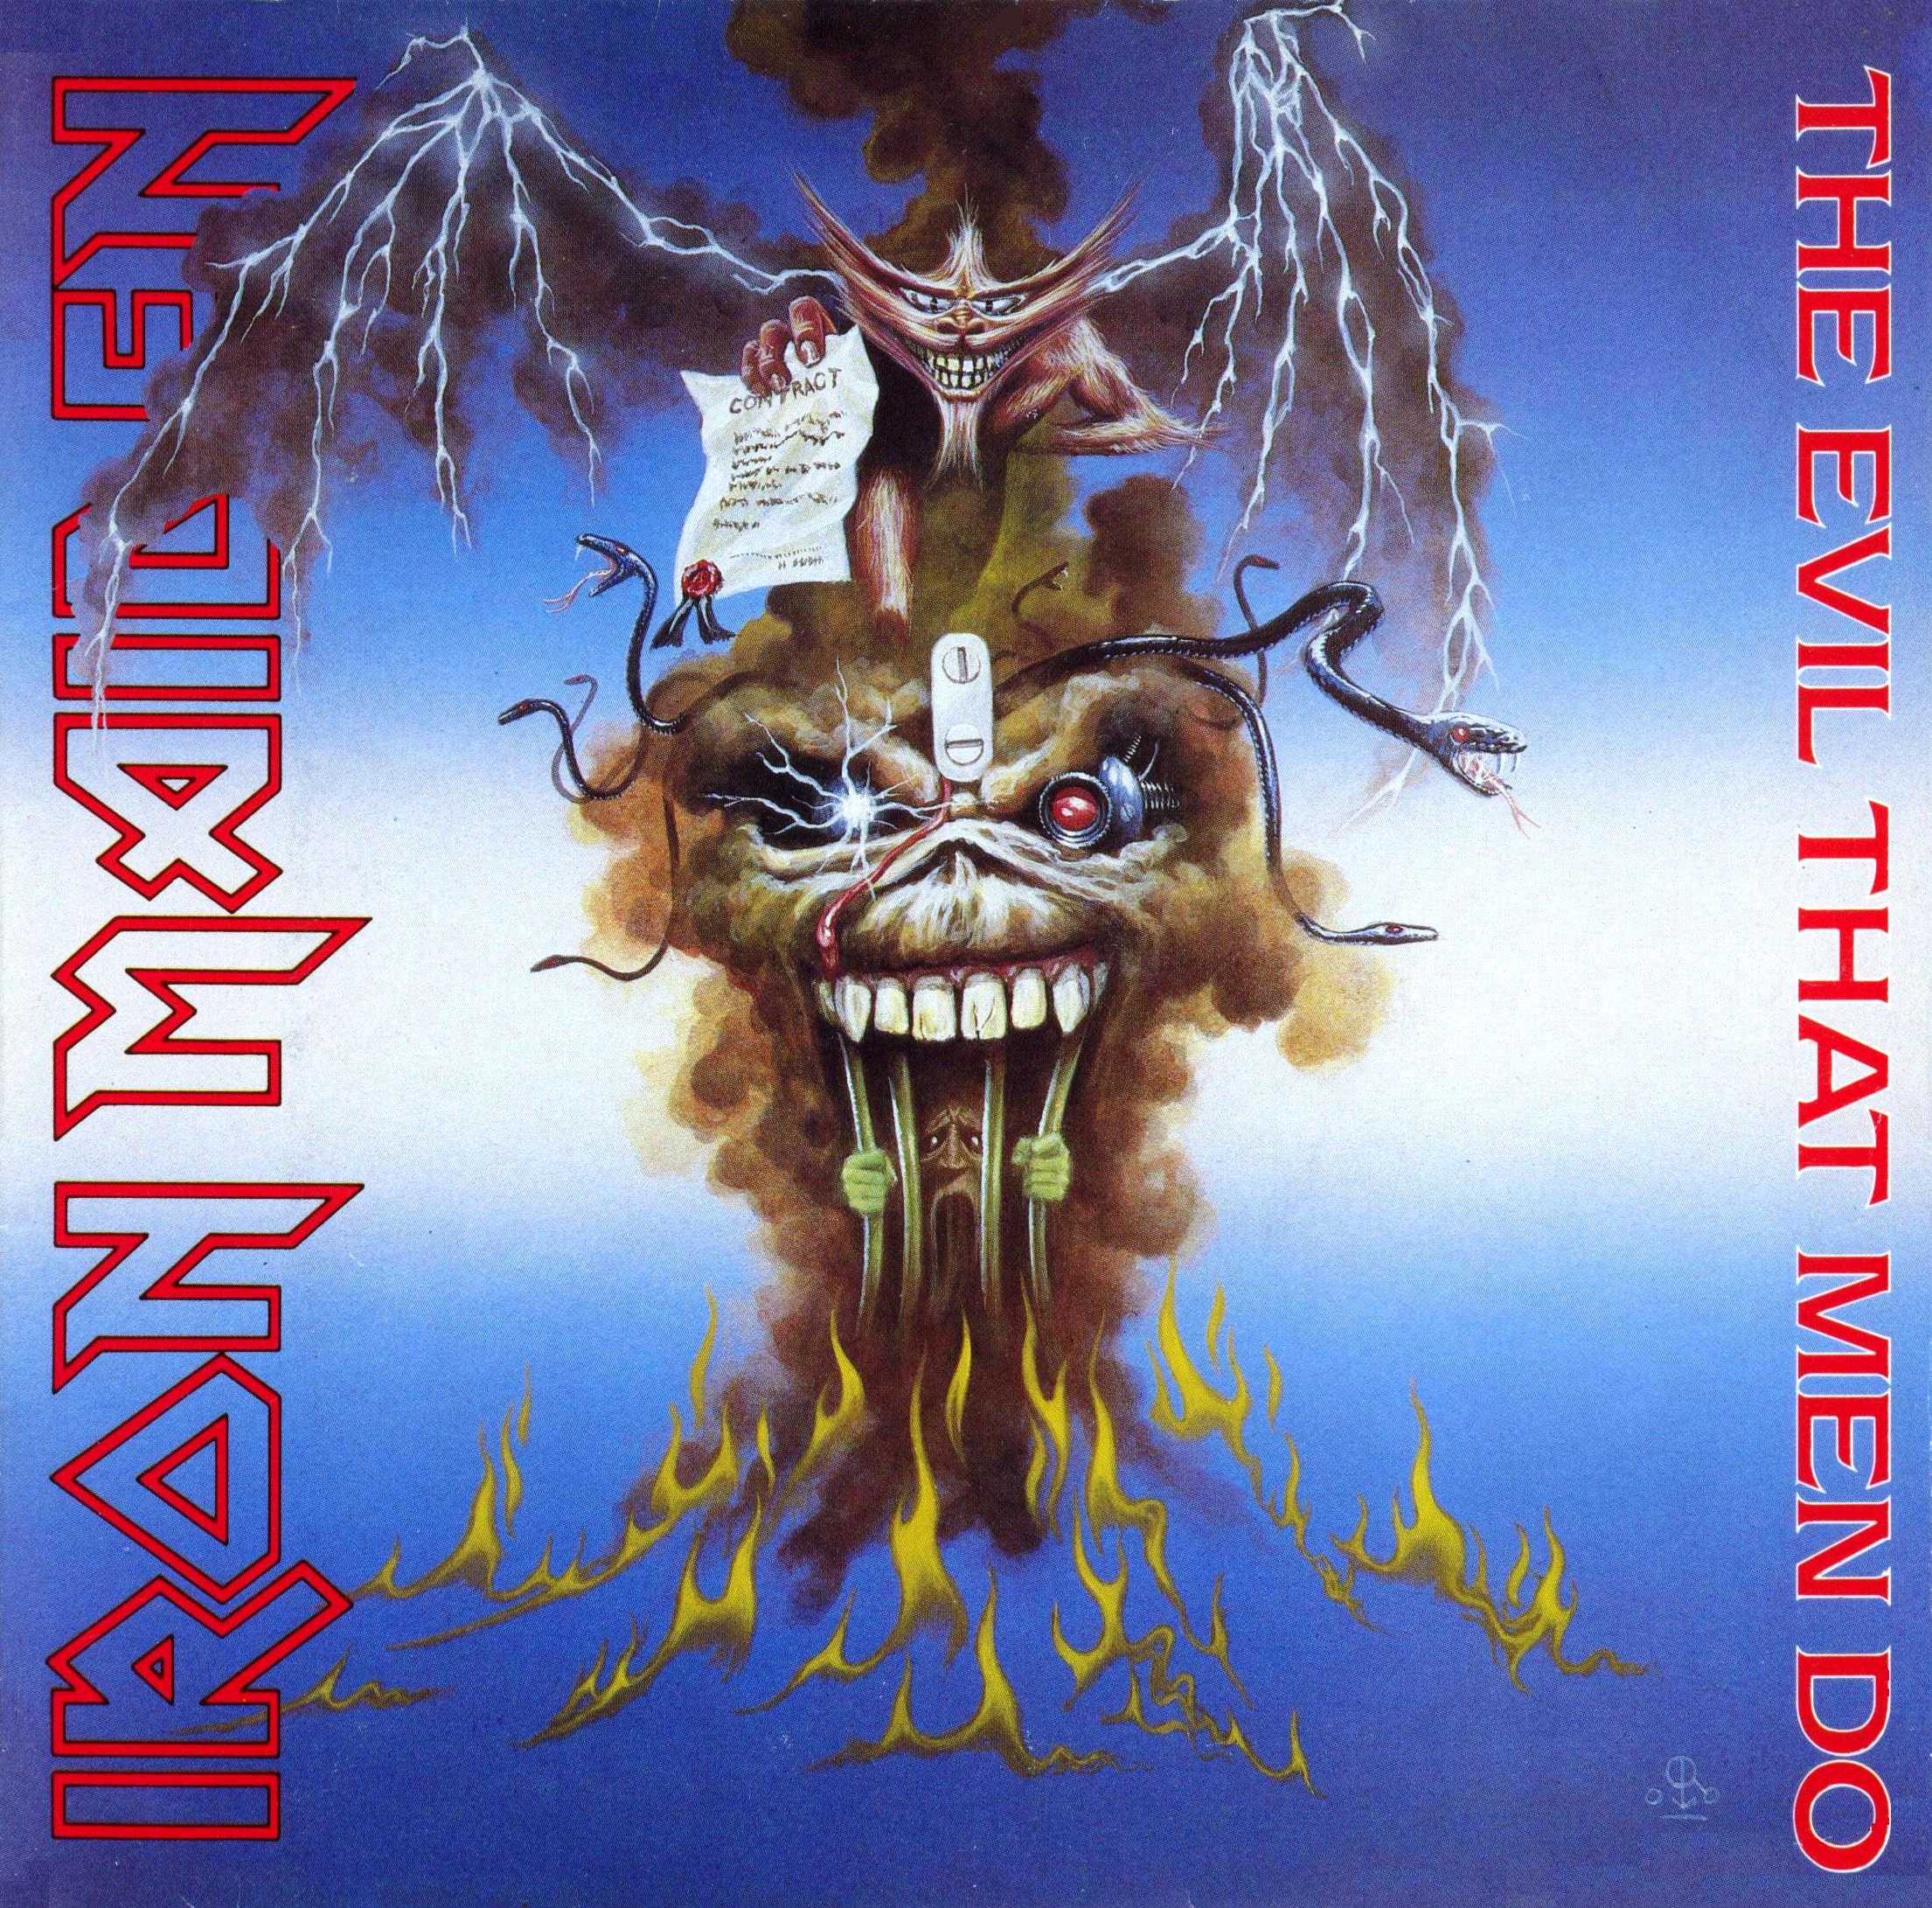 Iron Maiden The Evil That Men Do cover artwork